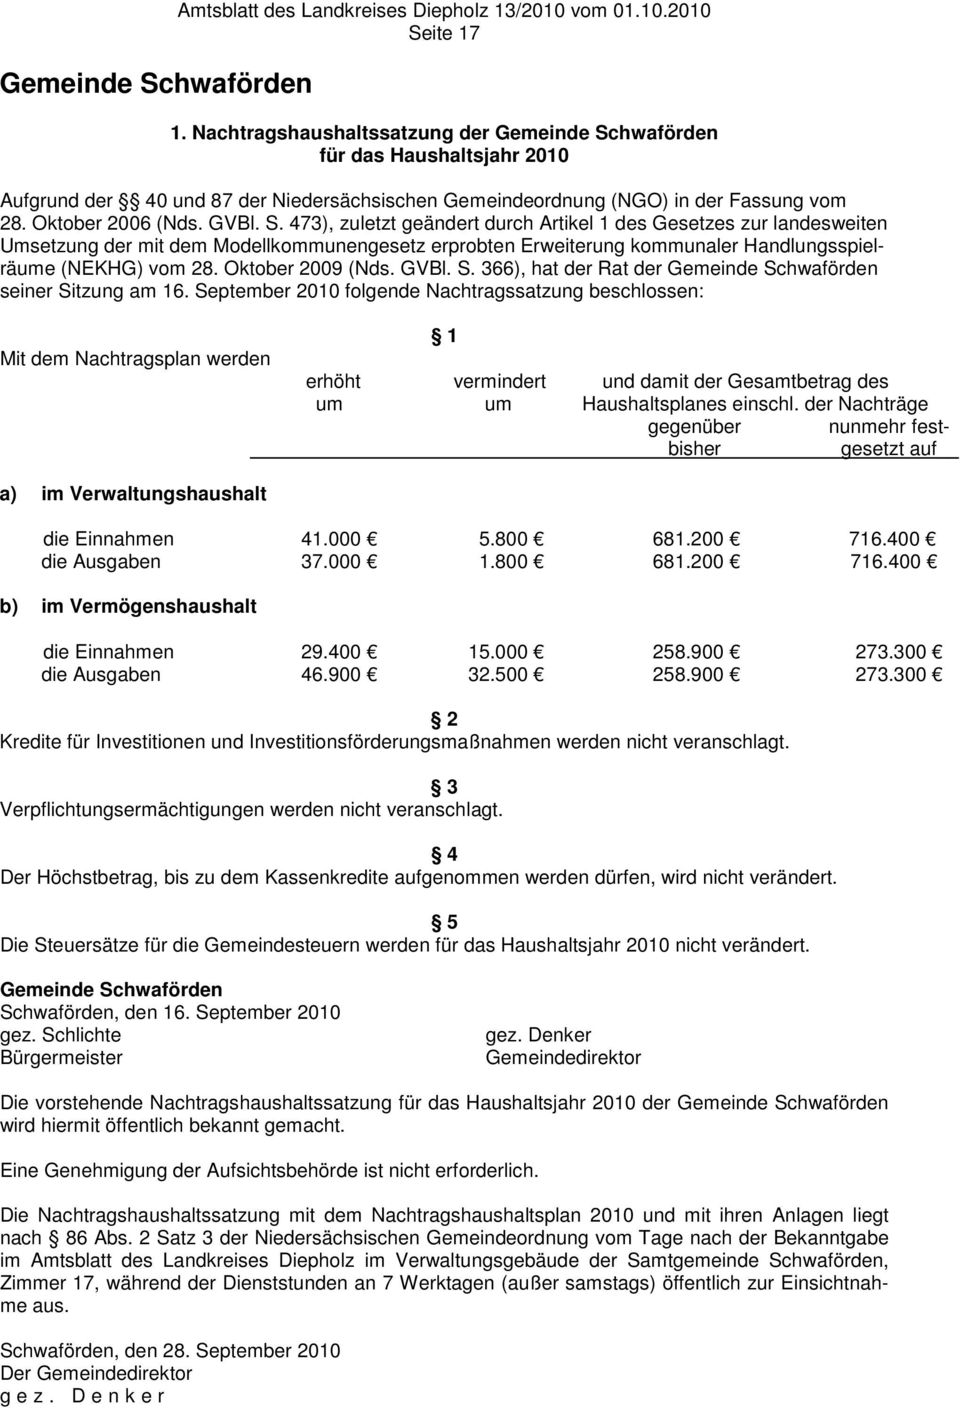 hwaförden für das Haushaltsjahr 2010 Aufgrund der 40 und 87 der Niedersächsischen Gemeindeordnung (NGO) in der Fassung vom 28. Oktober 2006 (Nds. GVBl. S.